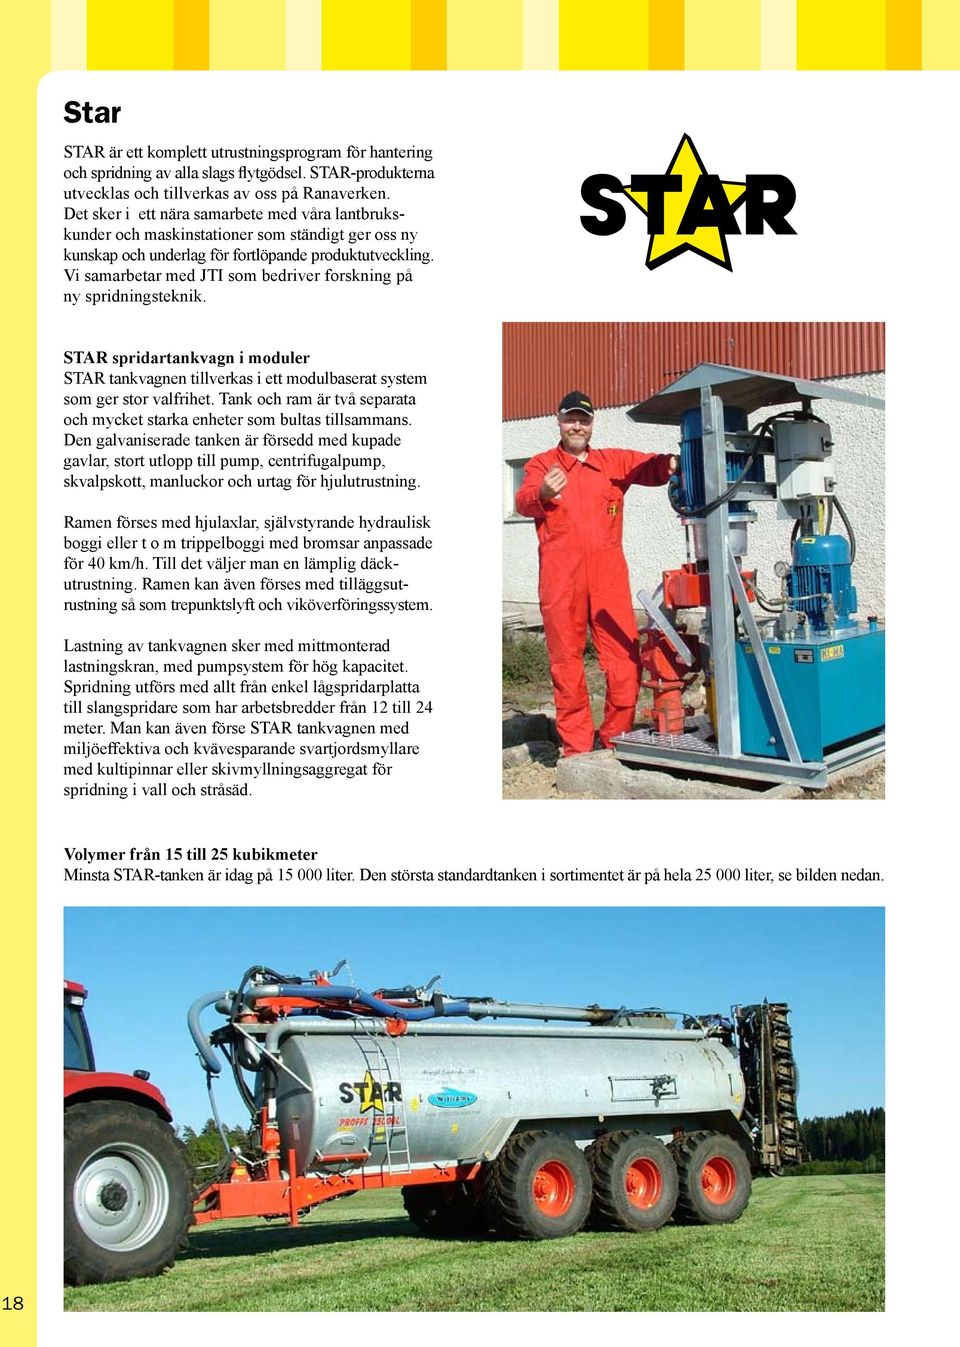 Vi samarbetar med JTI som bedriver forskning på ny spridningsteknik. STAR spridartankvagn i moduler STAR tankvagnen tillverkas i ett modulbaserat system som ger stor valfrihet.